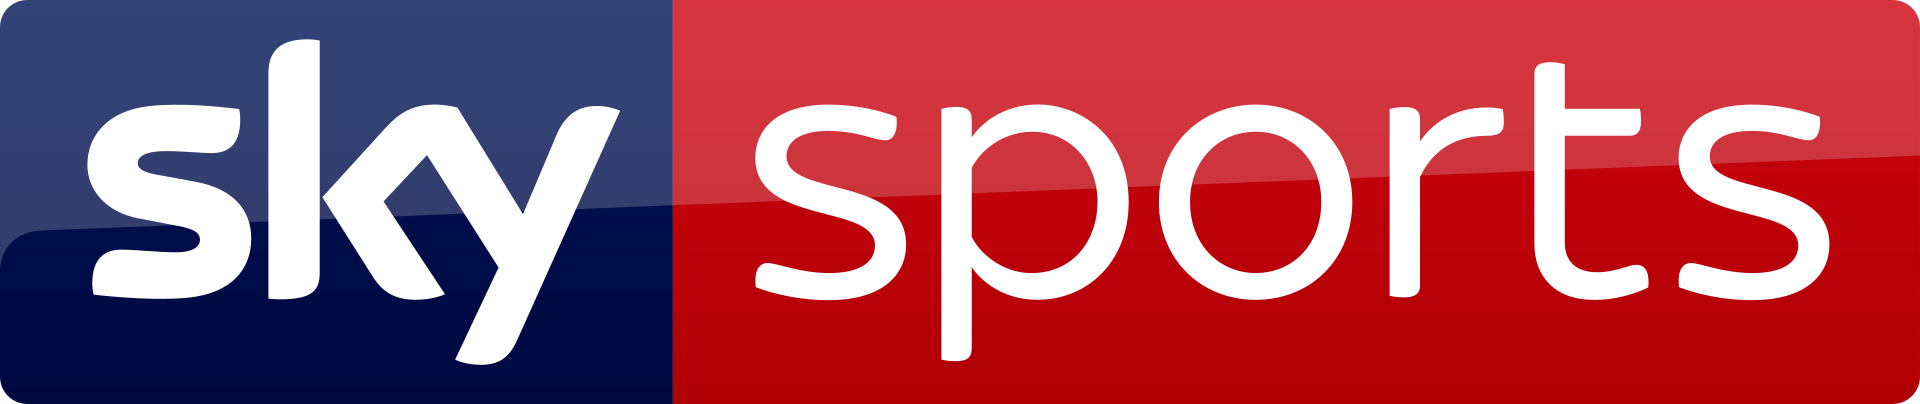 Sky Sports logo 2017.svg